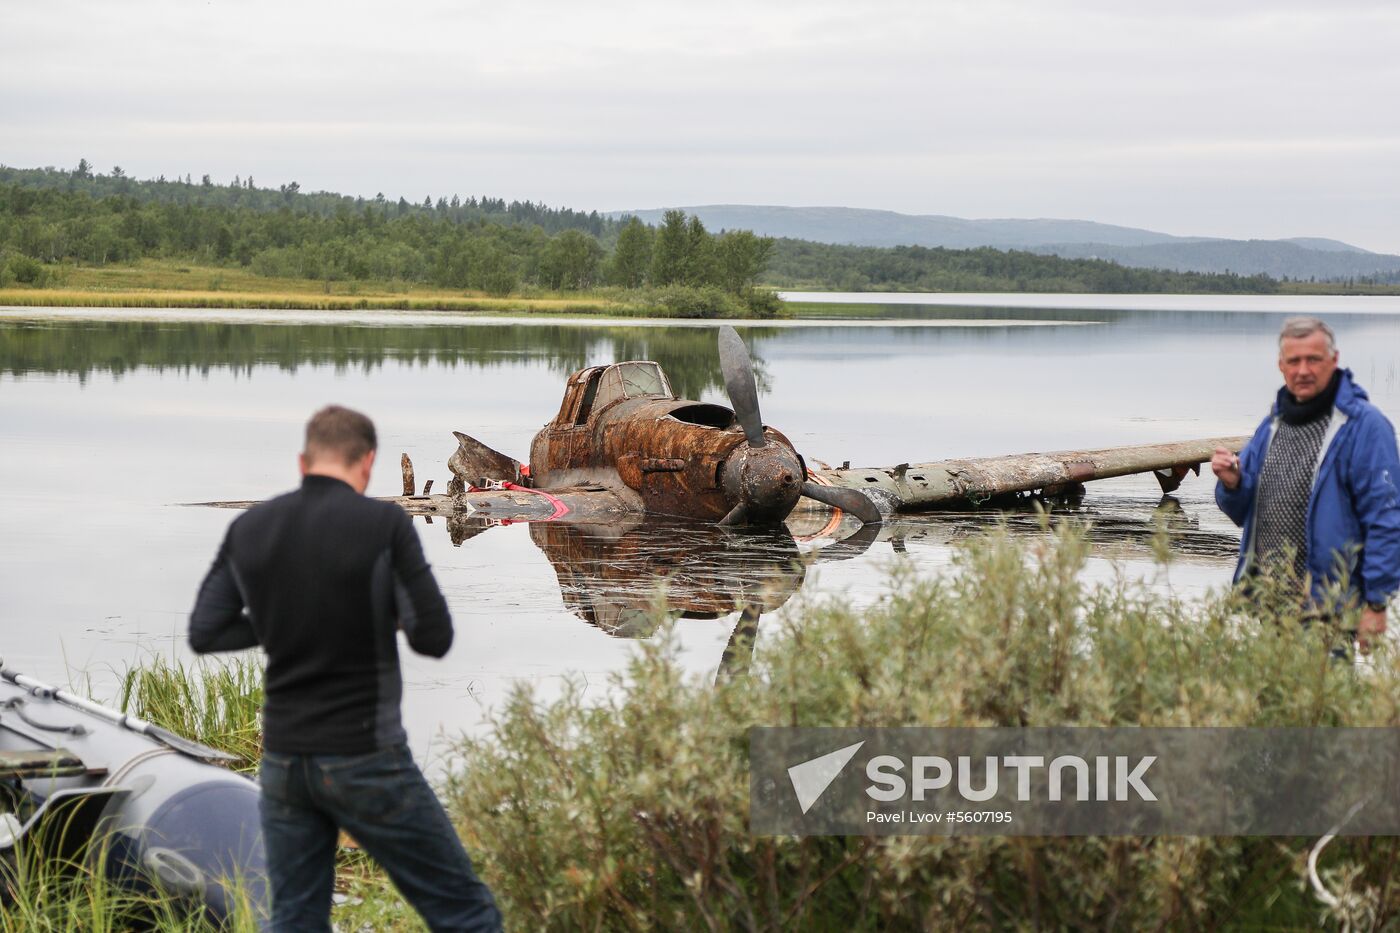 Raising IL-2 plane in Murmansk Region